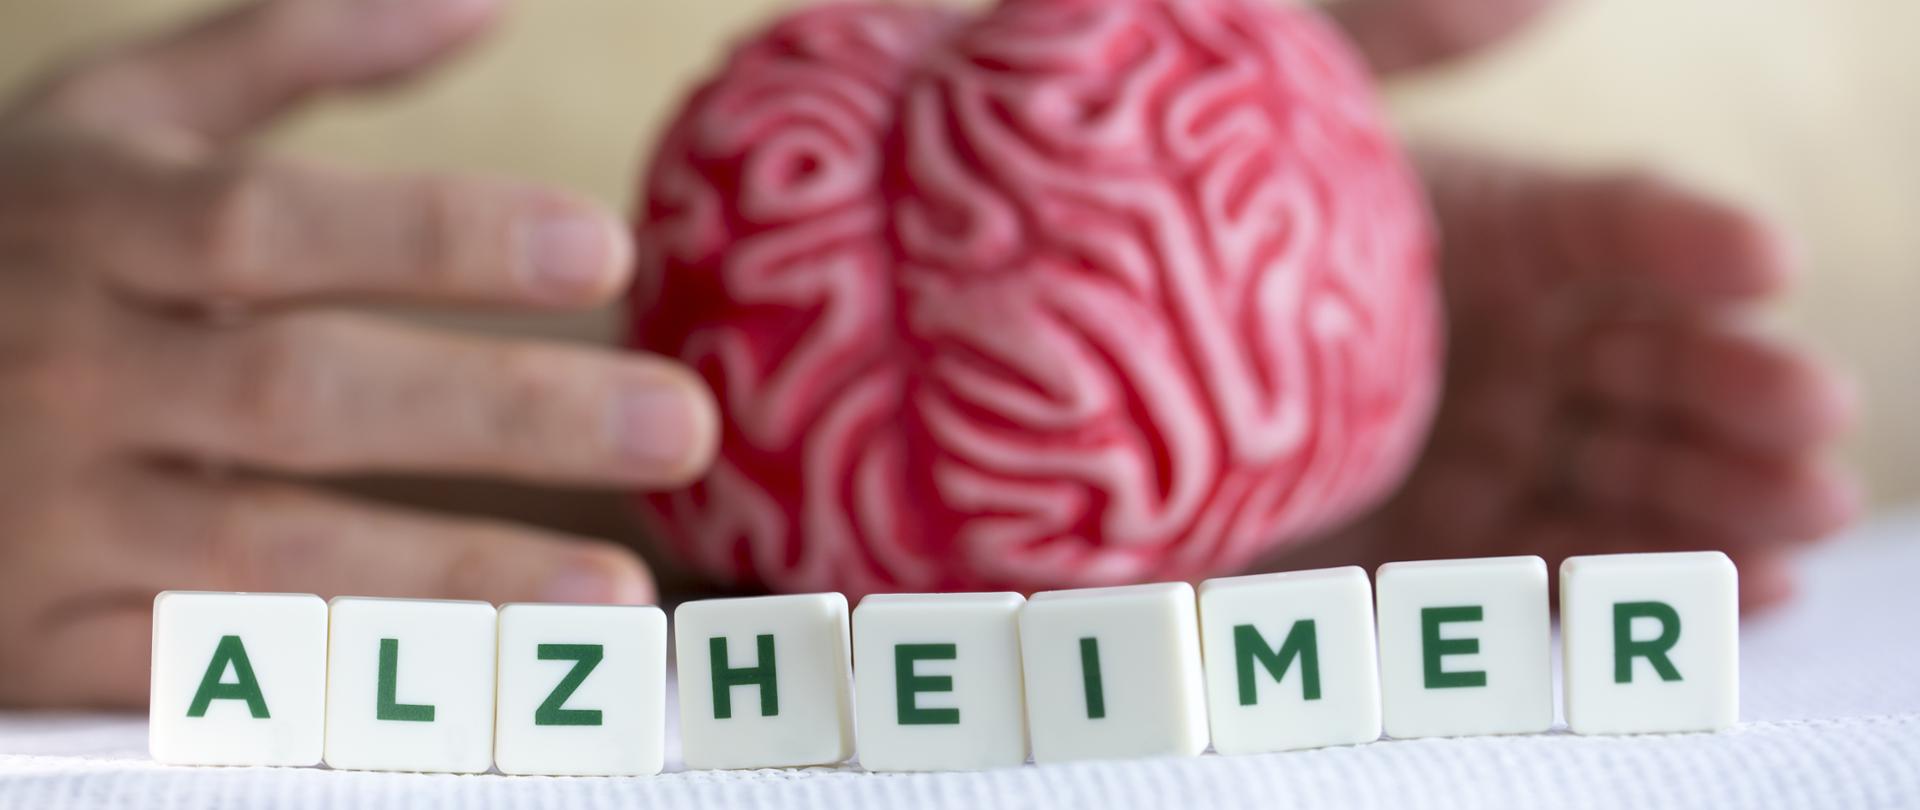 Napis alzheimer na tle dłoni, po między którymi znajduje się przedmiot przypominający ludzki mózg. 